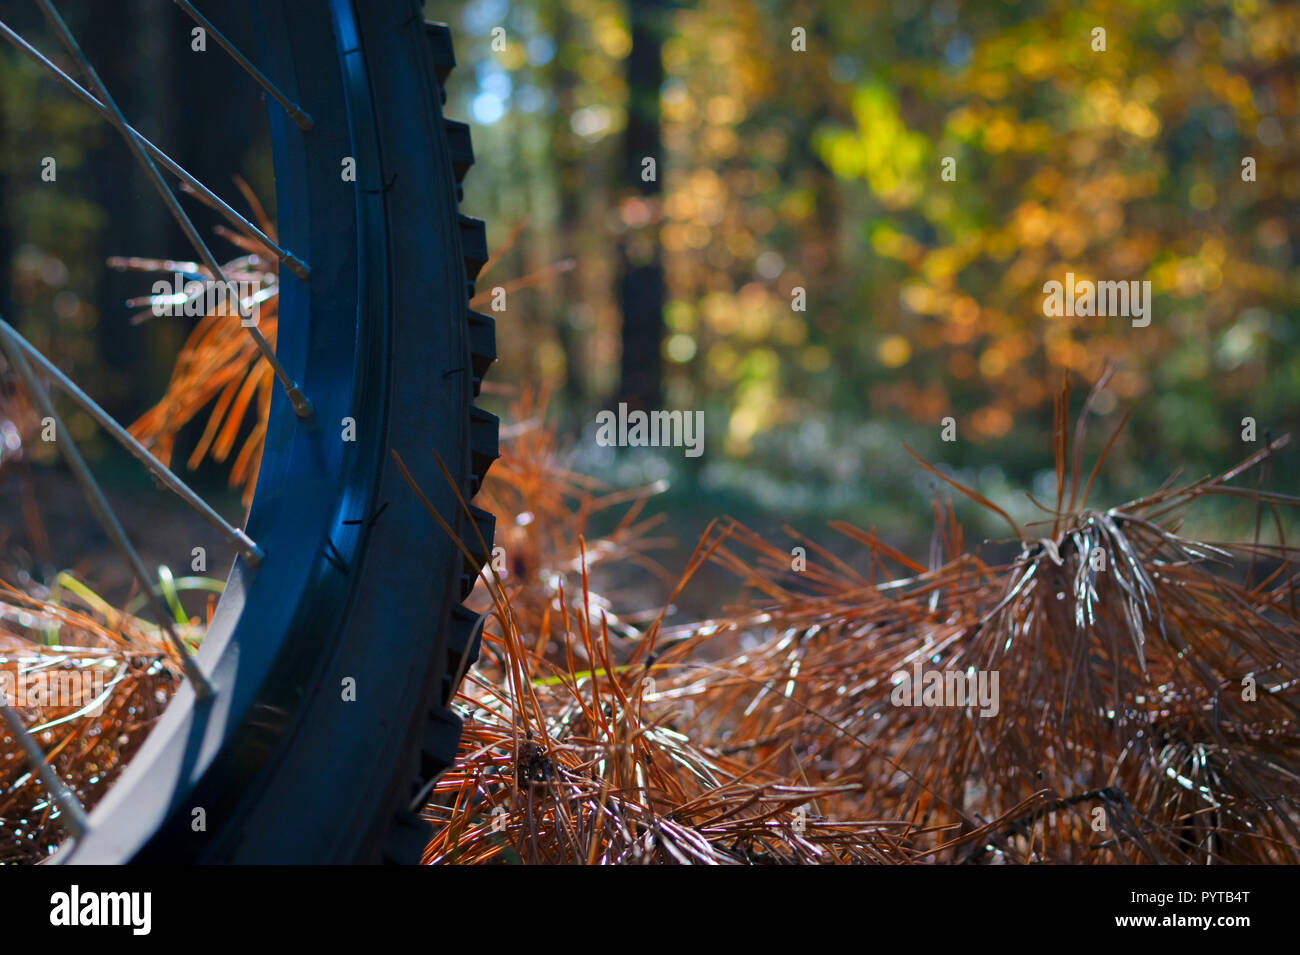 Fahrrad Rad auf Orange Tannennadeln Im Wald mit verschwommenen hellen Blätter im Herbst. Stockfoto